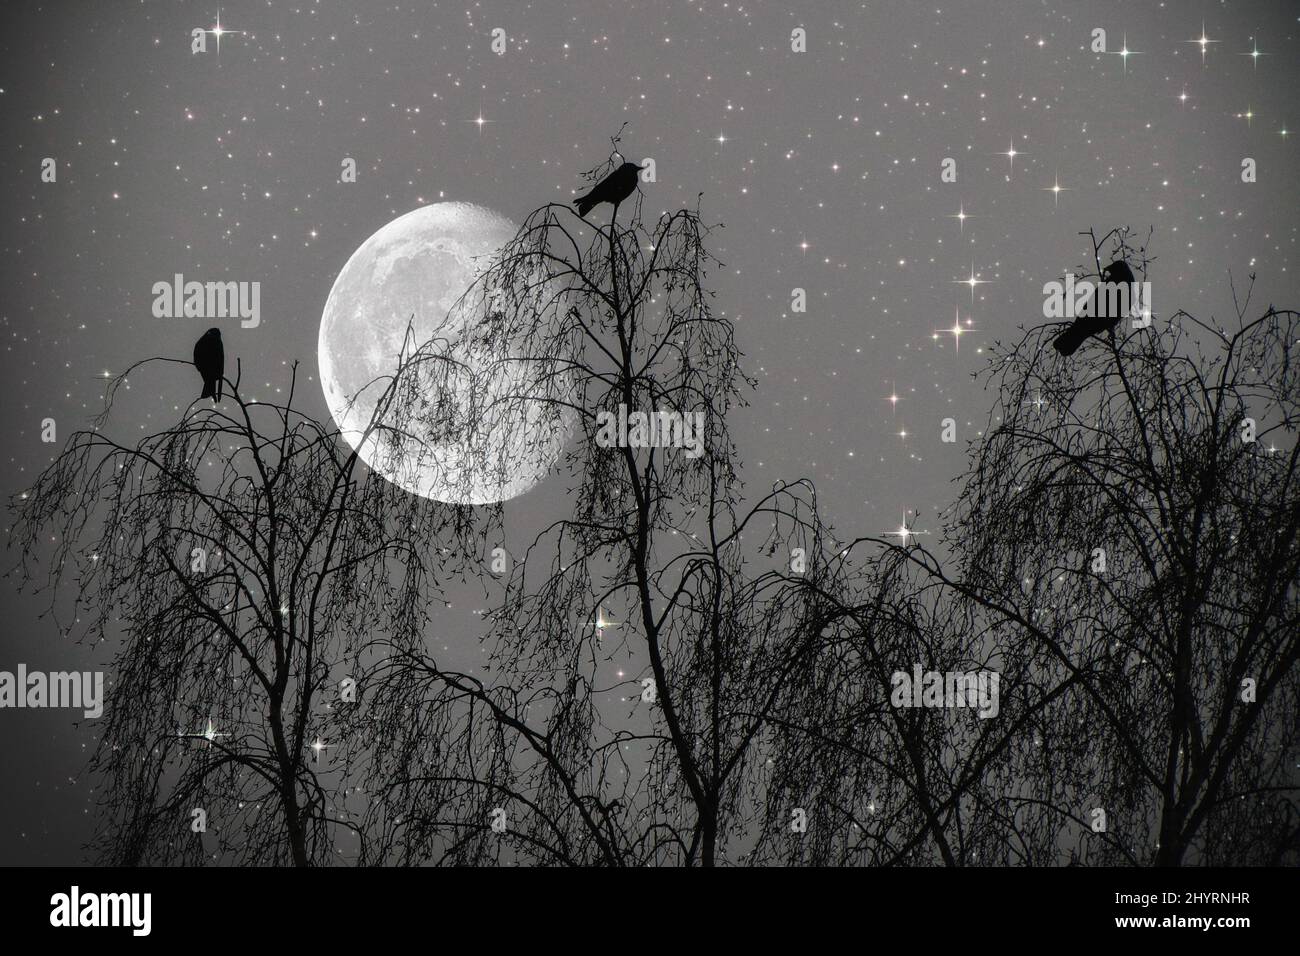 3 Vögel auf einem Baum im Hintergrund der Mond, 3 Uccelli su un albero e la Luna - Moonlight, Mondlicht, Abend, sera, Notte, Nacht, Fantasie, Fantasy Foto Stock